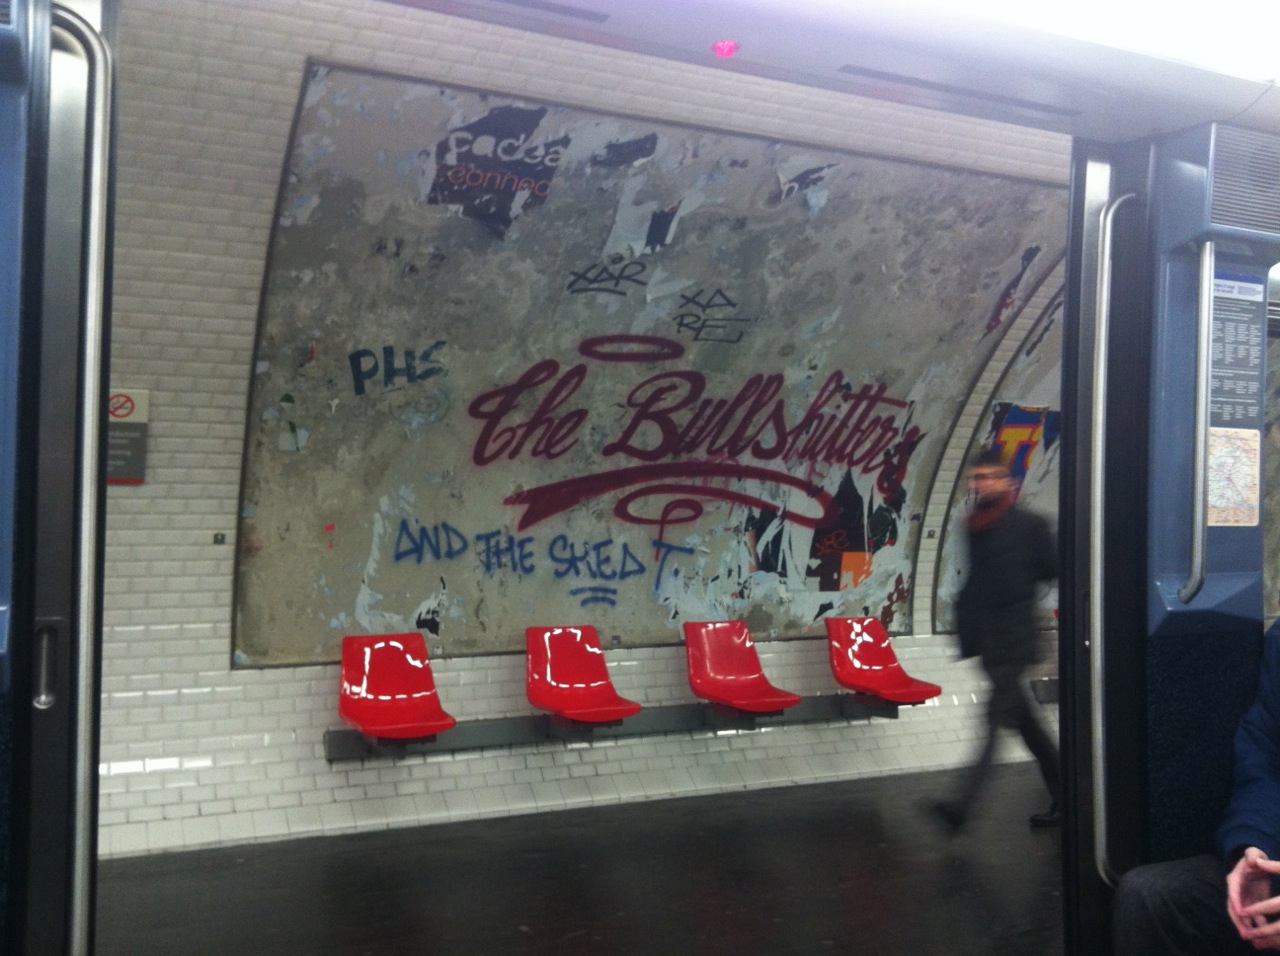 http://fragmentdetags.net/Photo/2012/11/the-bullshitter-paris-metro-tag-2012.jpg